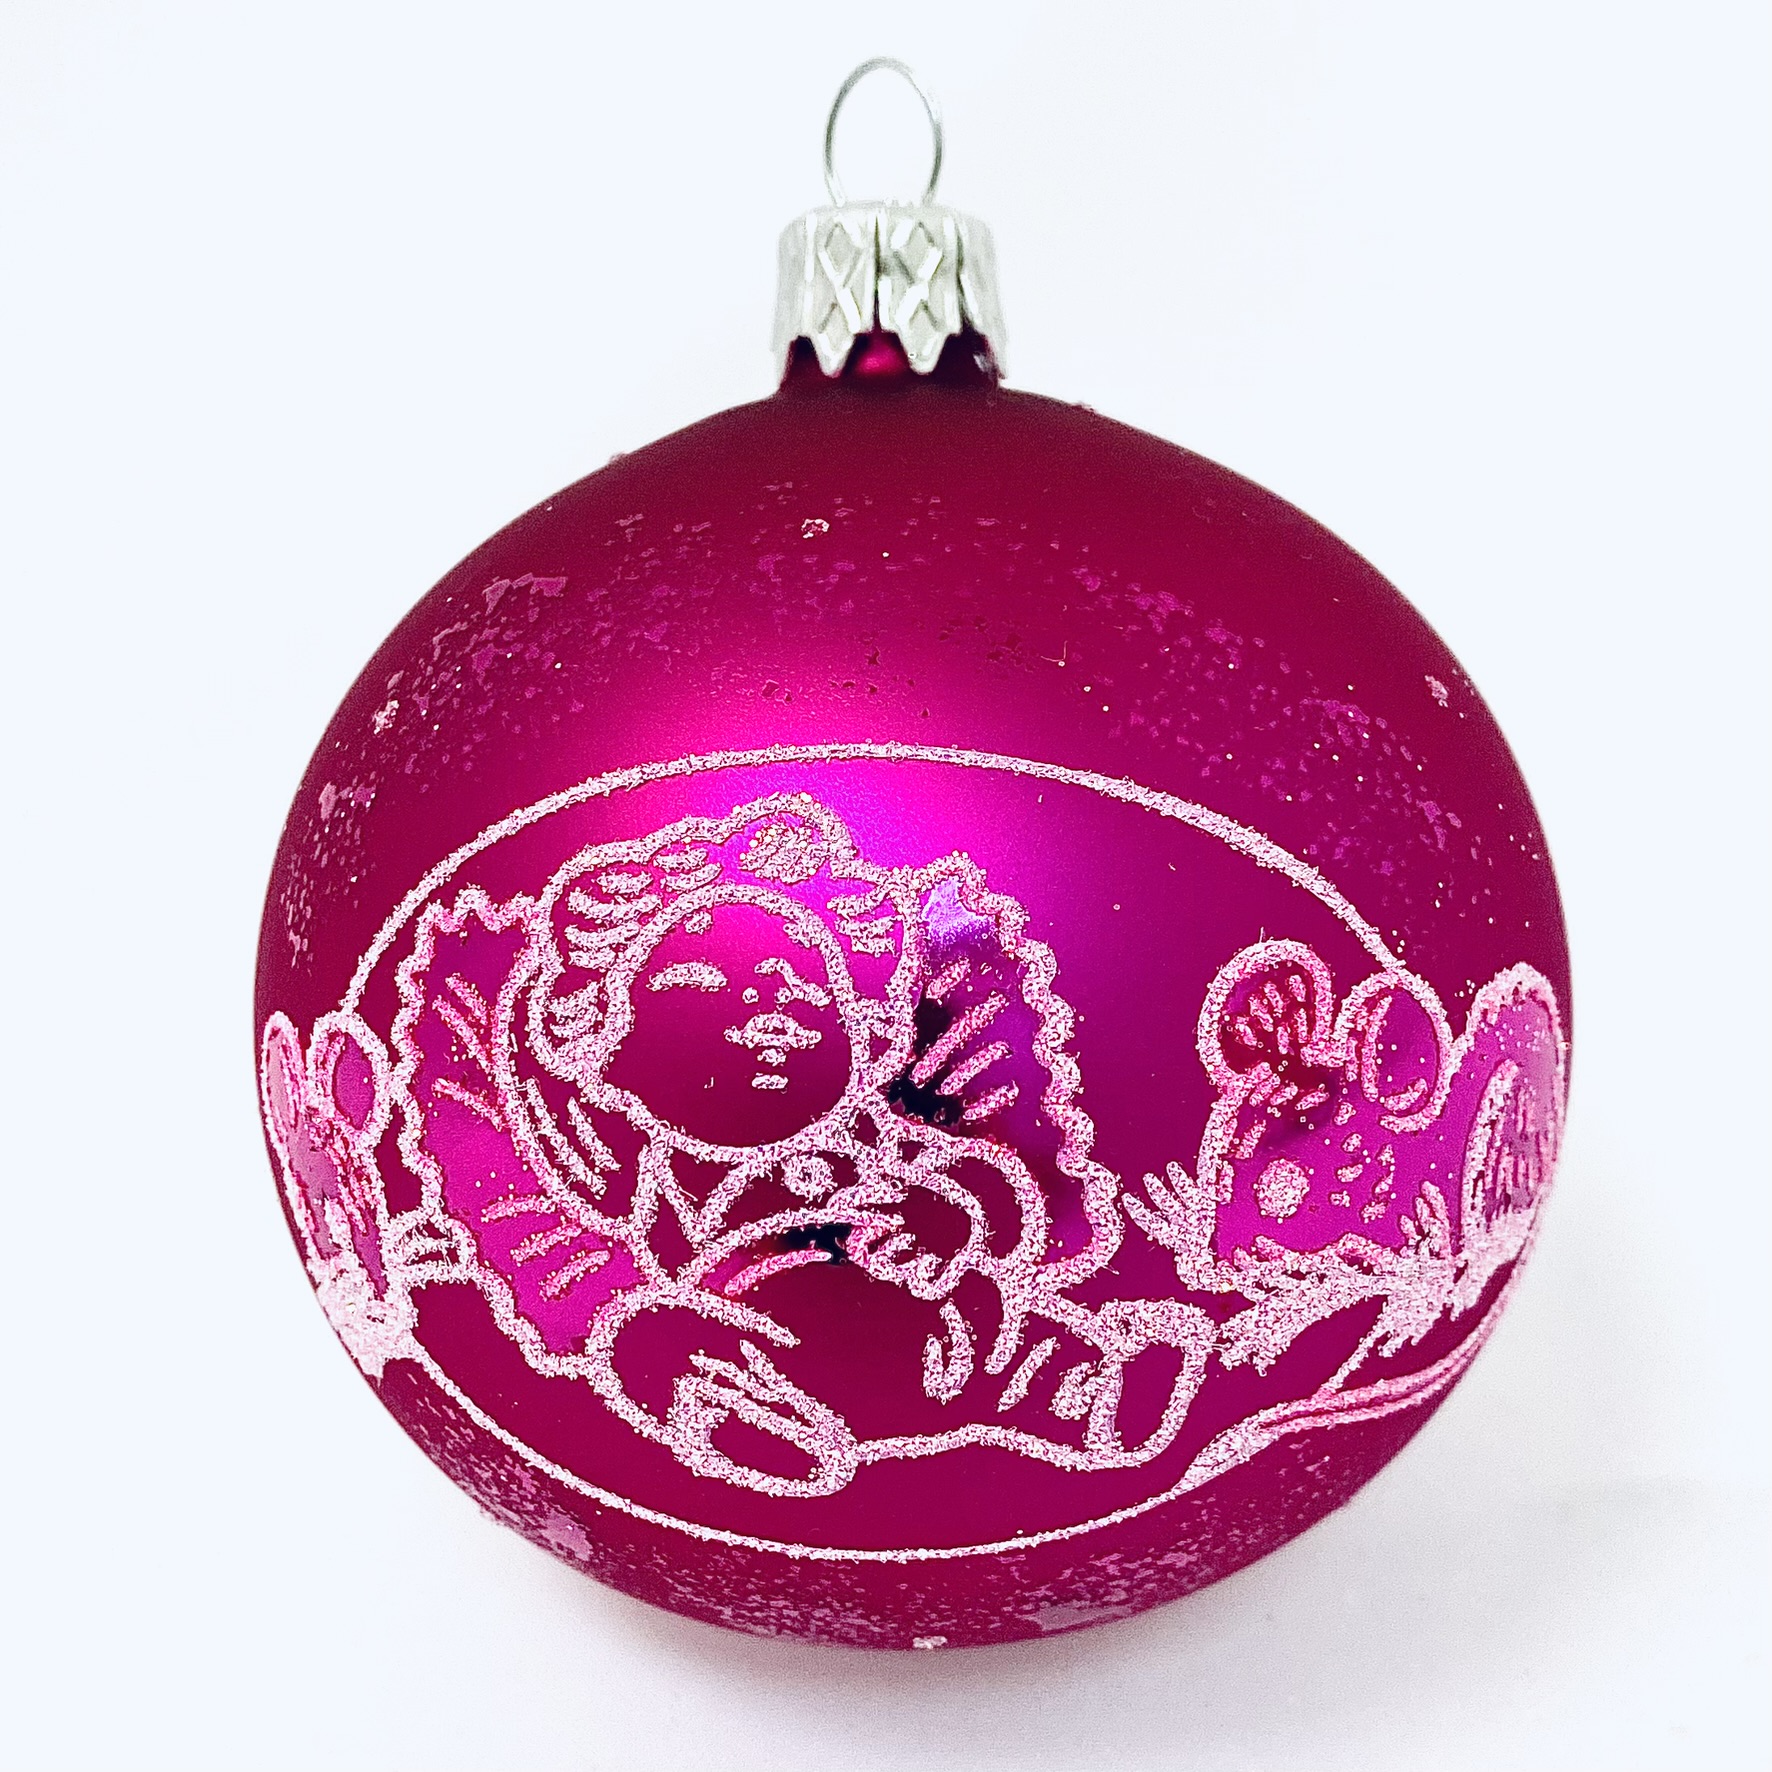 Skleněná vánoční ozdoba s textem na přání - Maličké radovánky s vlastním textem (růžová, 1 ks, 8 cm) Balení: 1ks, Barva: růžová, Velikost: 8 cm